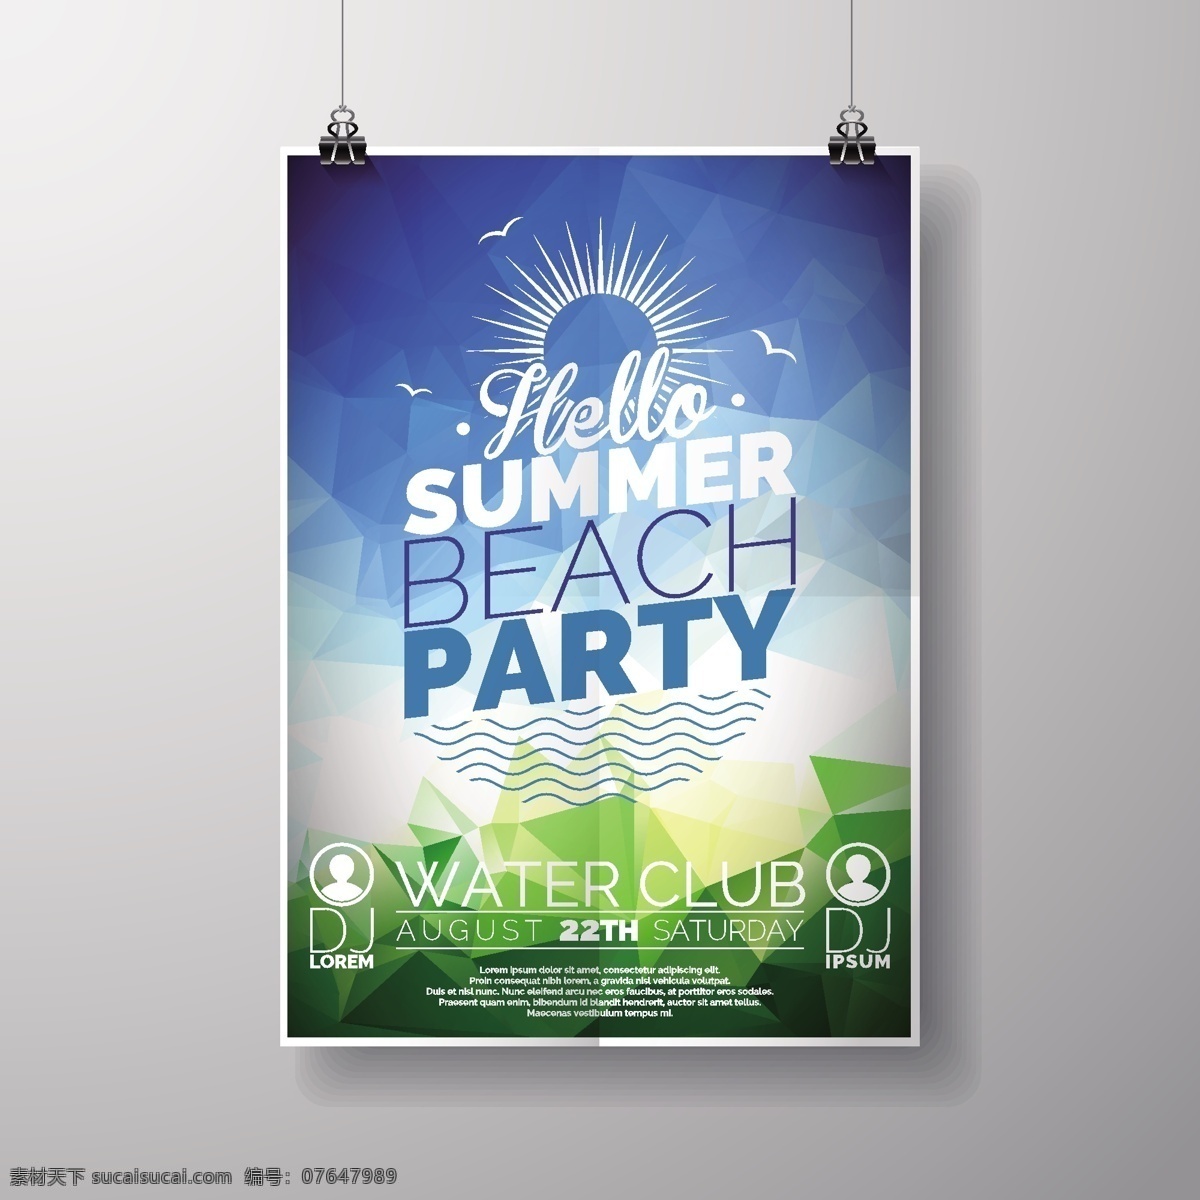 夏季 沙滩 派对 宣传单 矢量图 太阳 夹子 俱乐部 海报